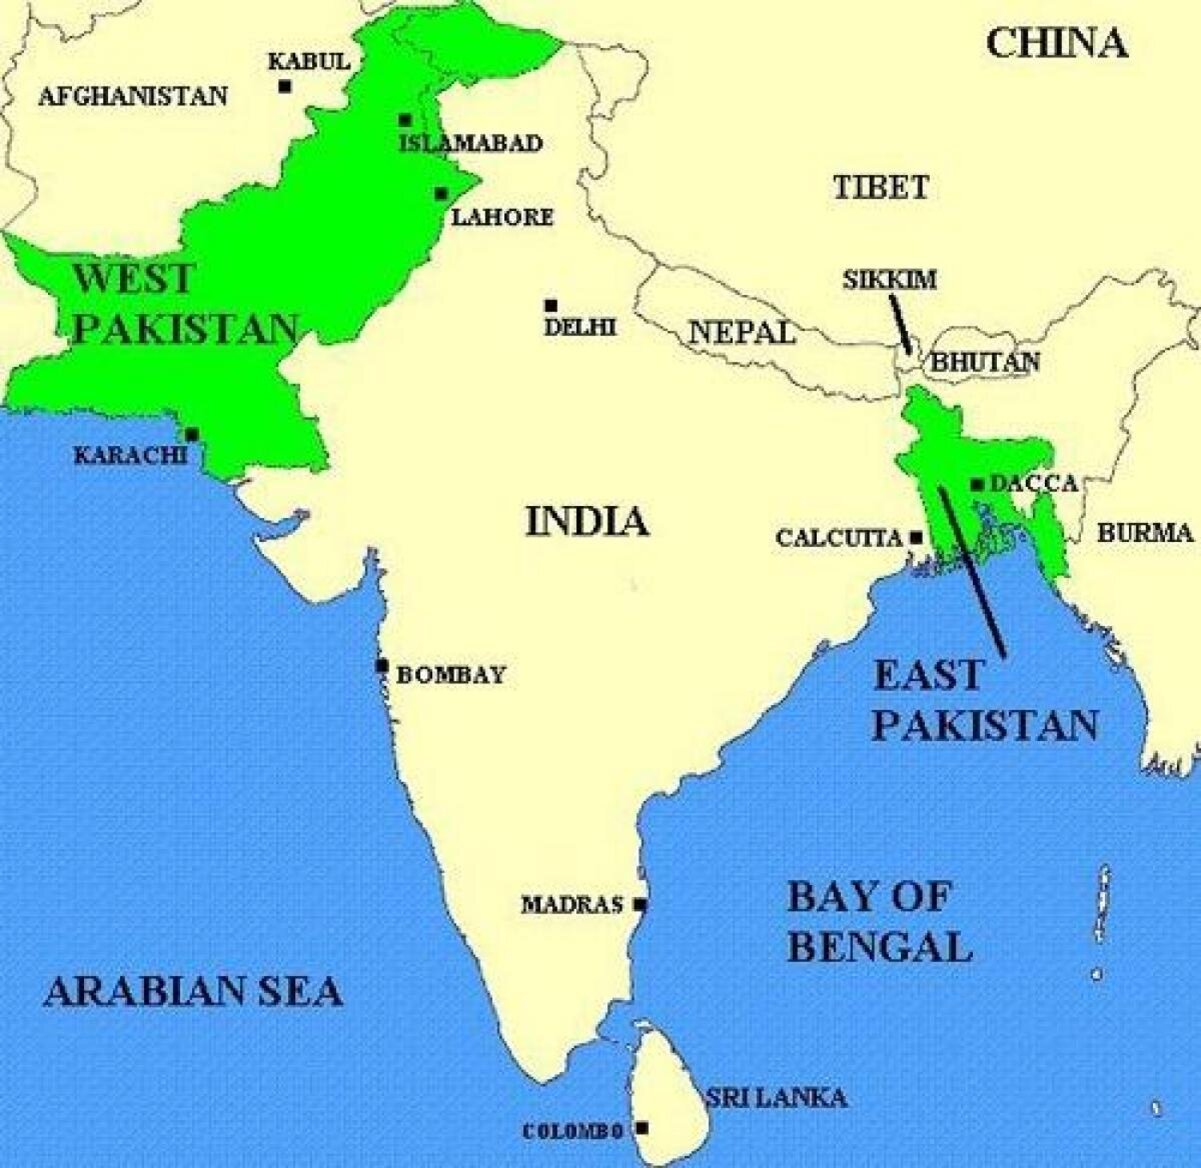 Индия и Пакистан на карте